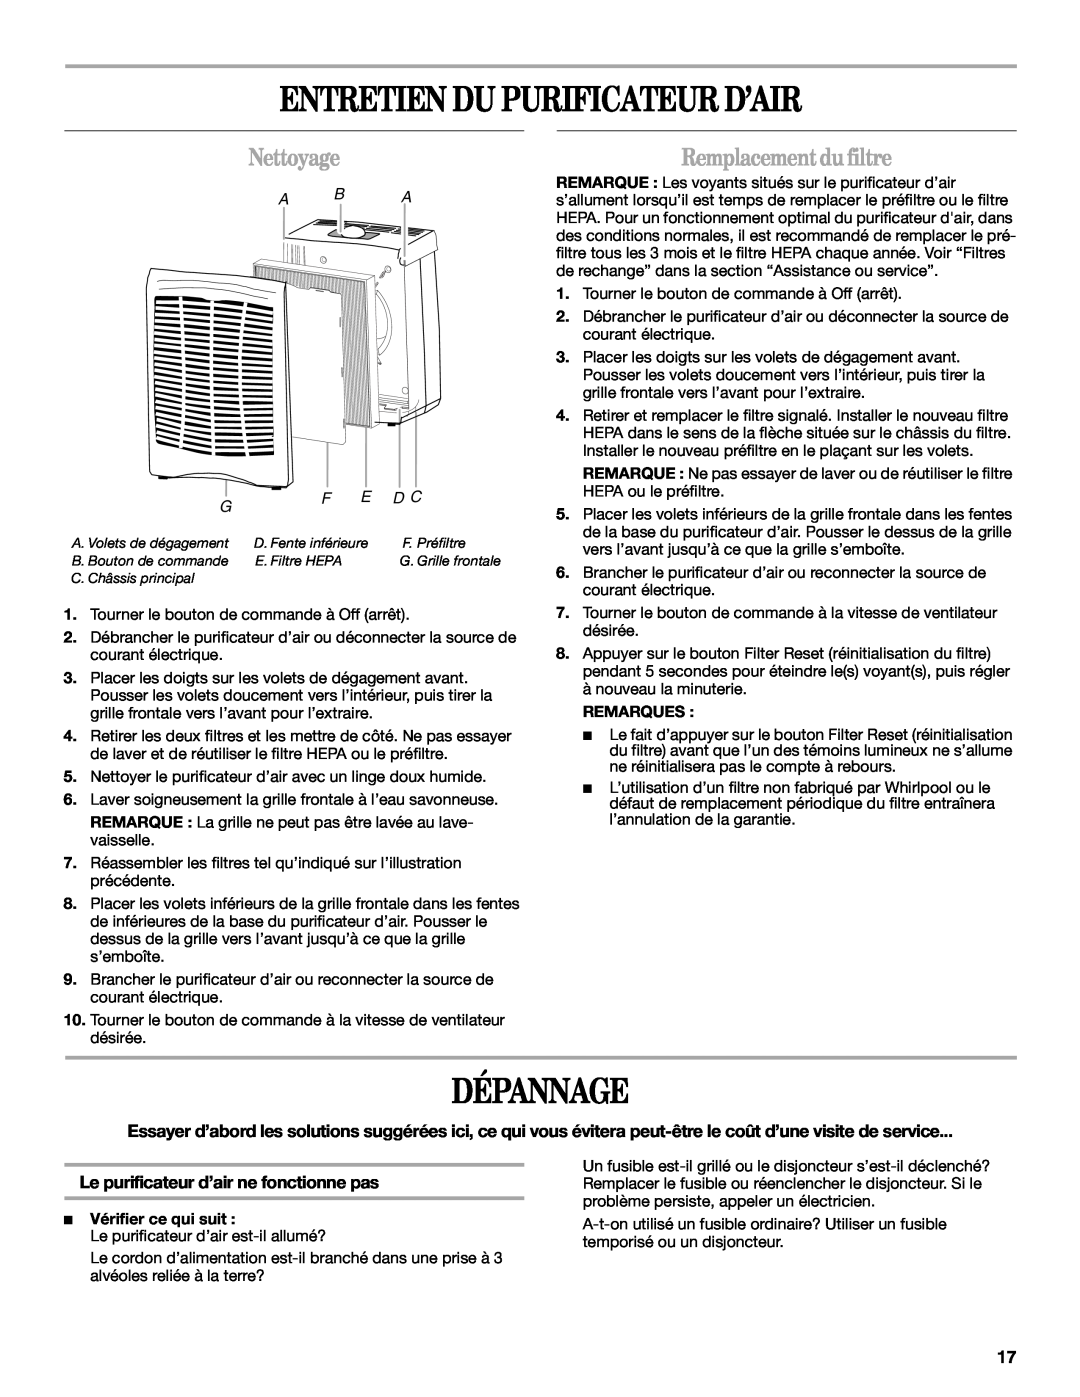 Whirlpool AP450, AP250 manual Entretien Du Purificateur D’Air, Dépannage, Nettoyage, Remplacement du filtre, A B A 